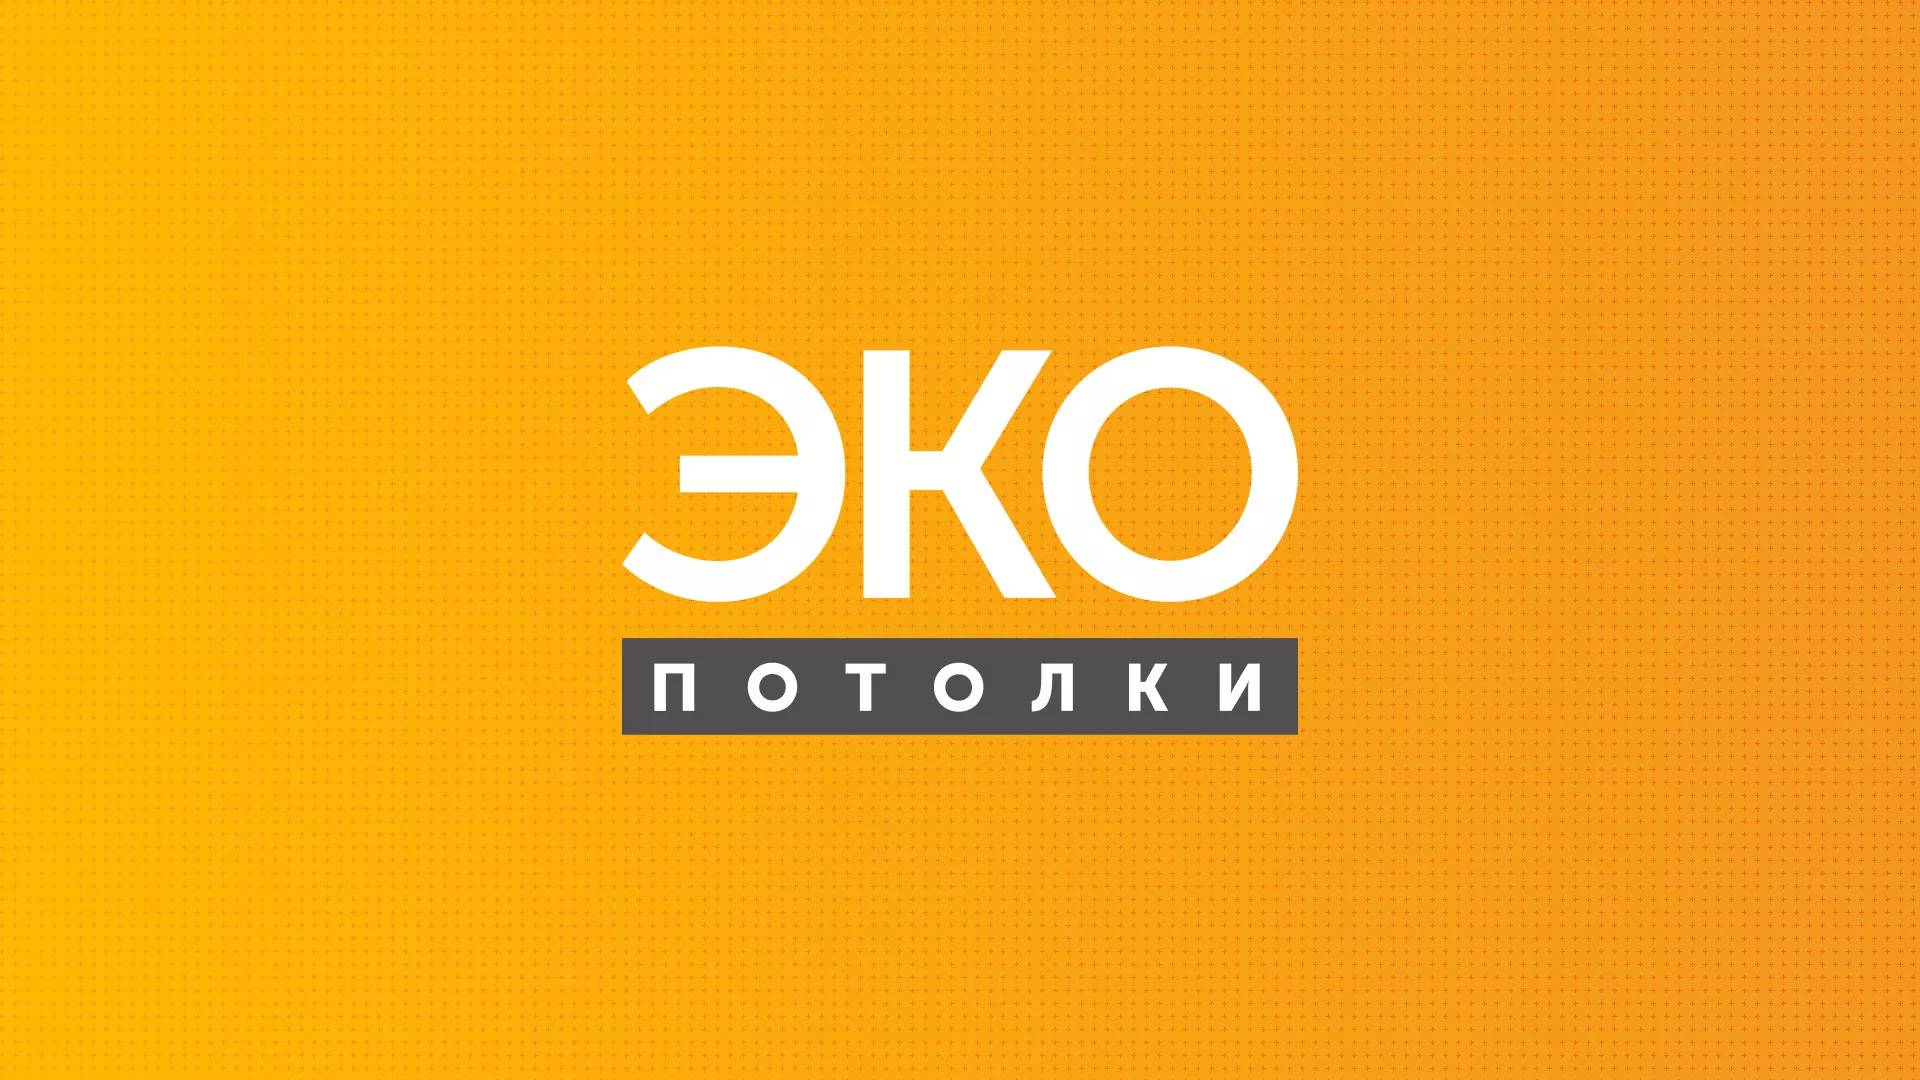 Разработка сайта по натяжным потолкам «Эко Потолки» в Котельниково